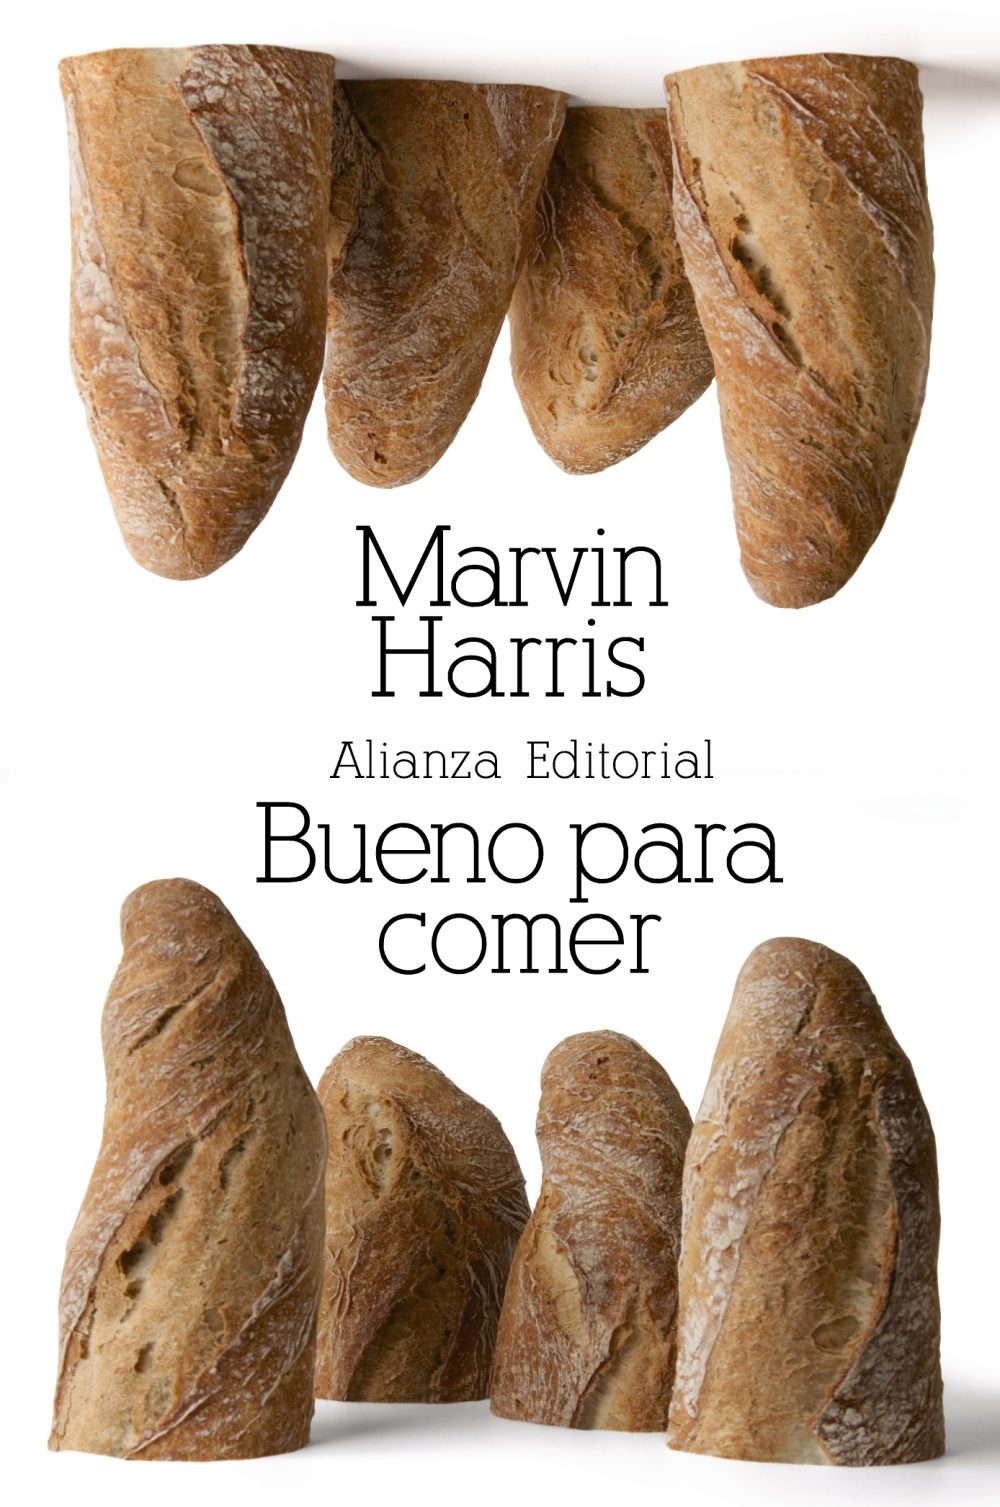 BUENO PARA COMER- Marvin Harris - Alianza Editorial